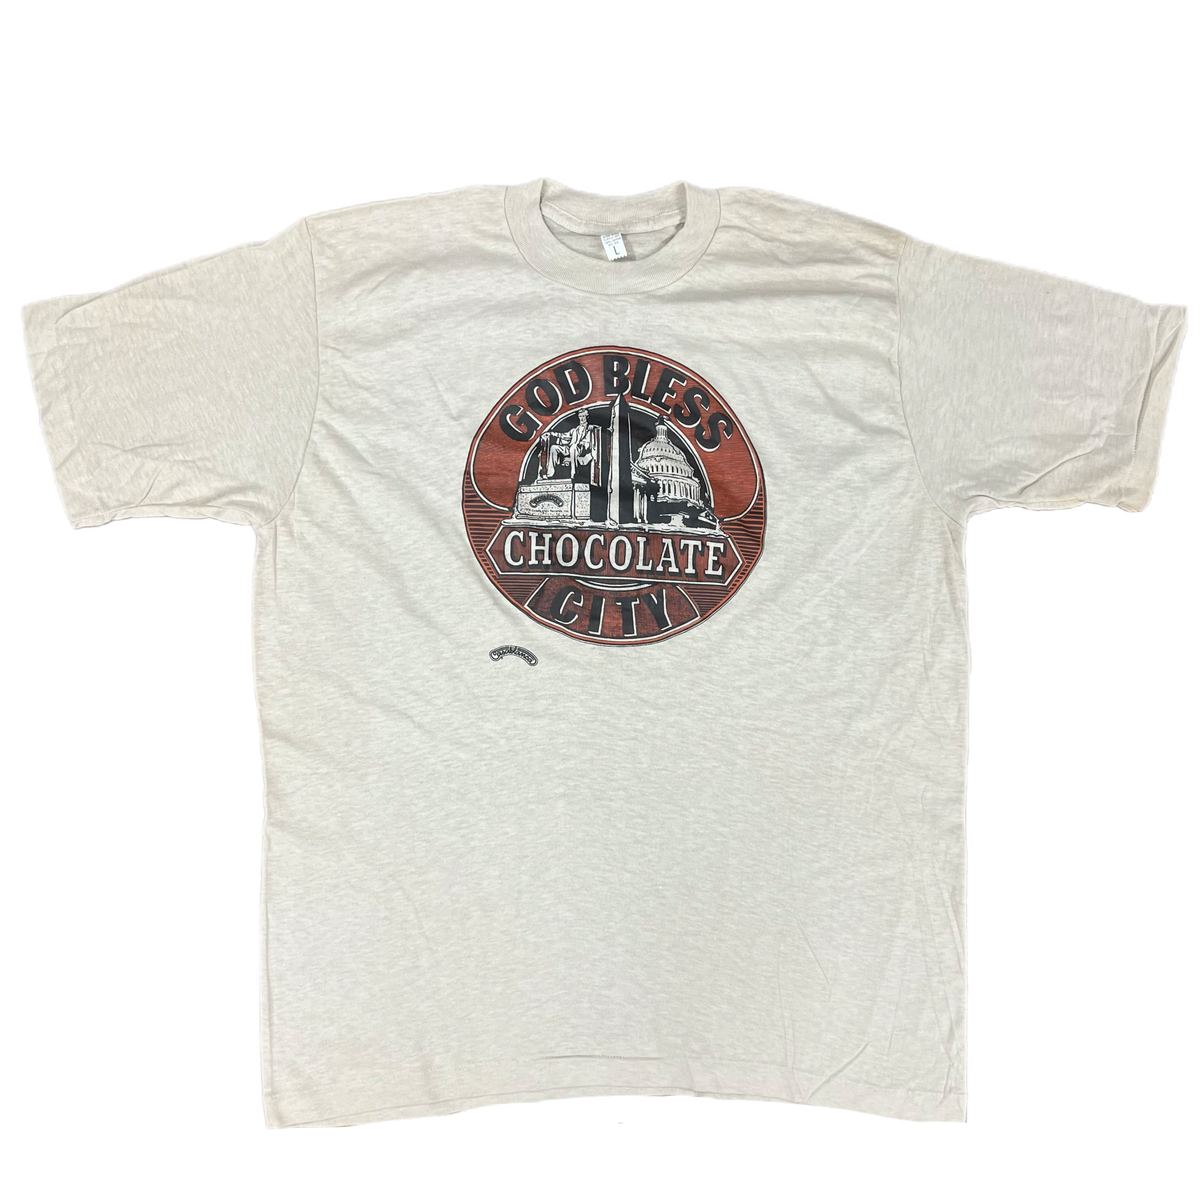 Vintage Parliament &quot;Chocolate City&quot; Casablanca Records Promotional T-Shirt